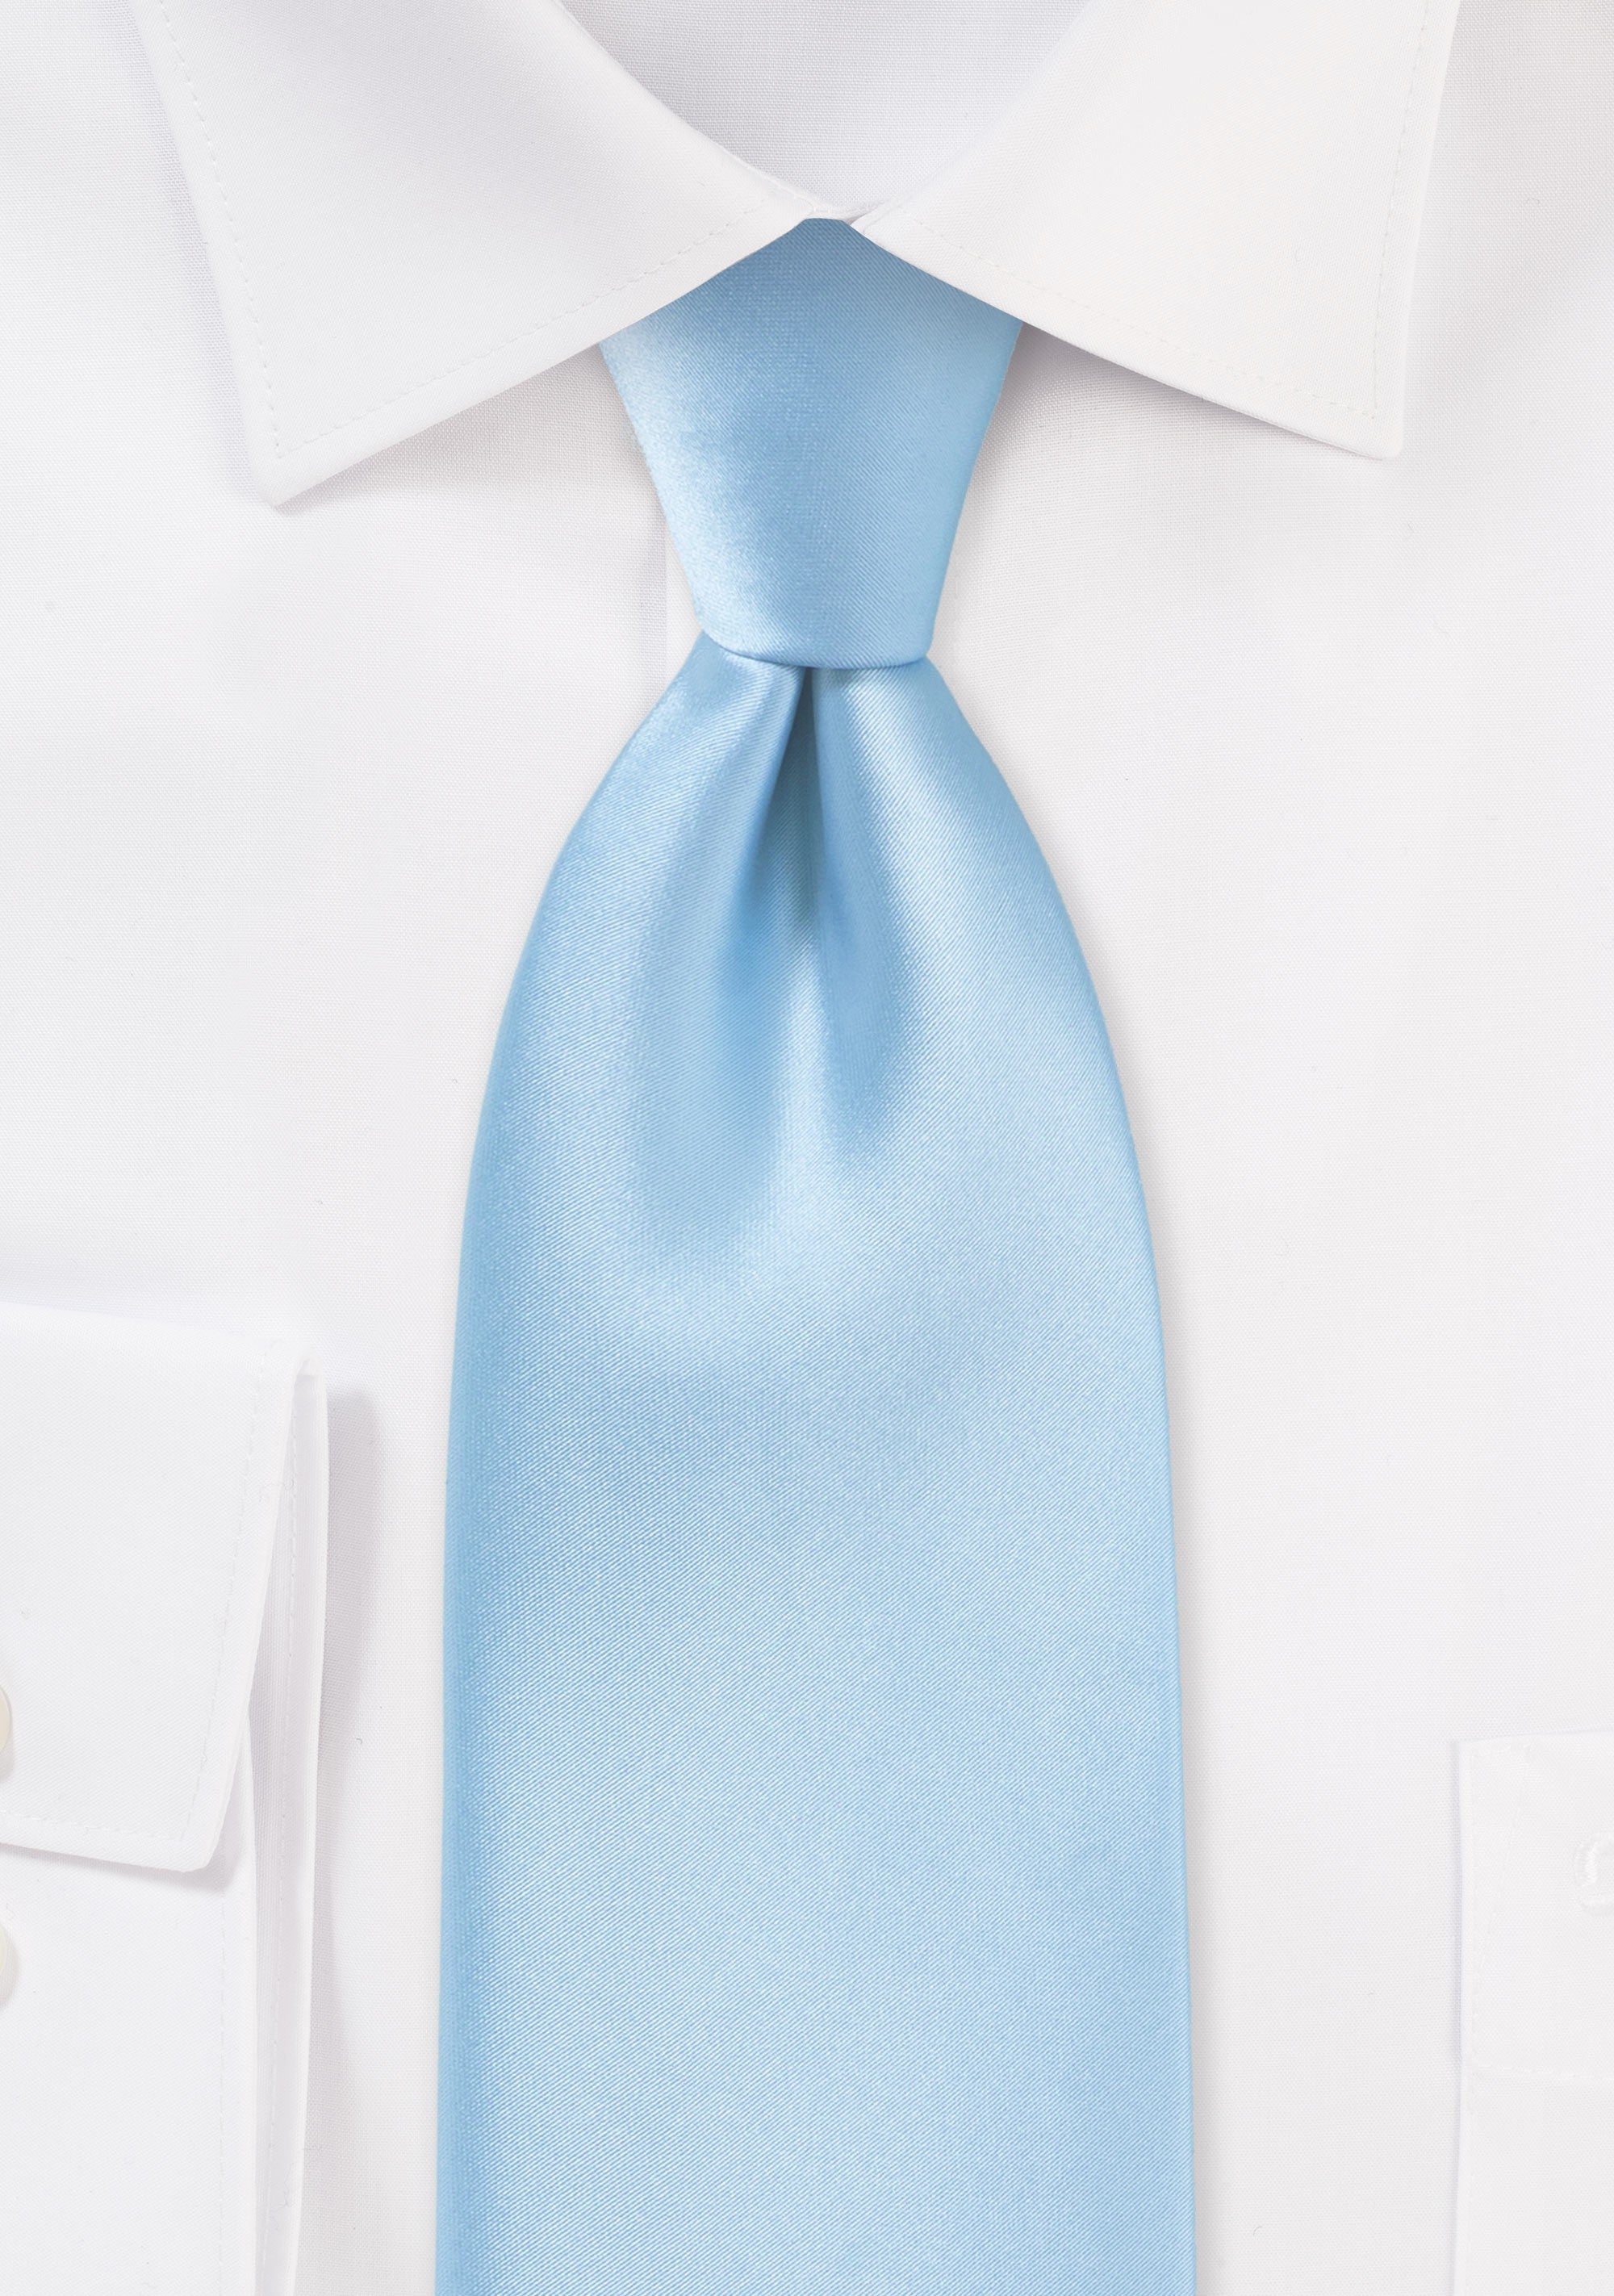 Powder Blue Solid Necktie